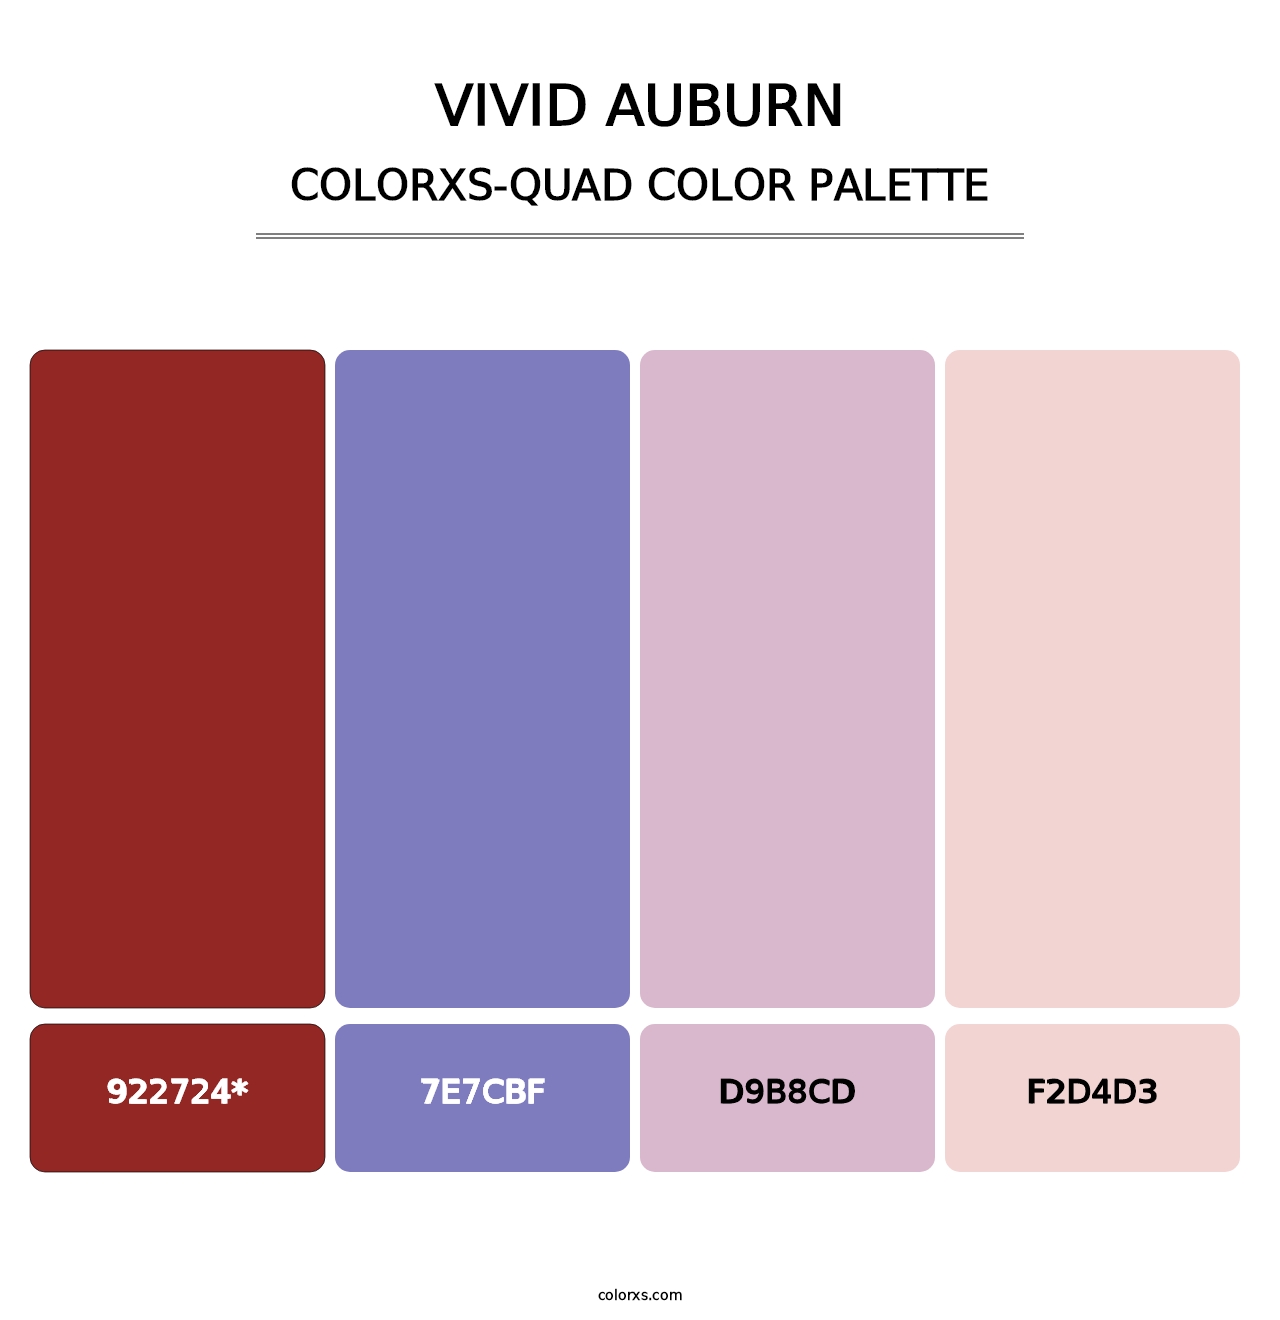 Vivid Auburn - Colorxs Quad Palette